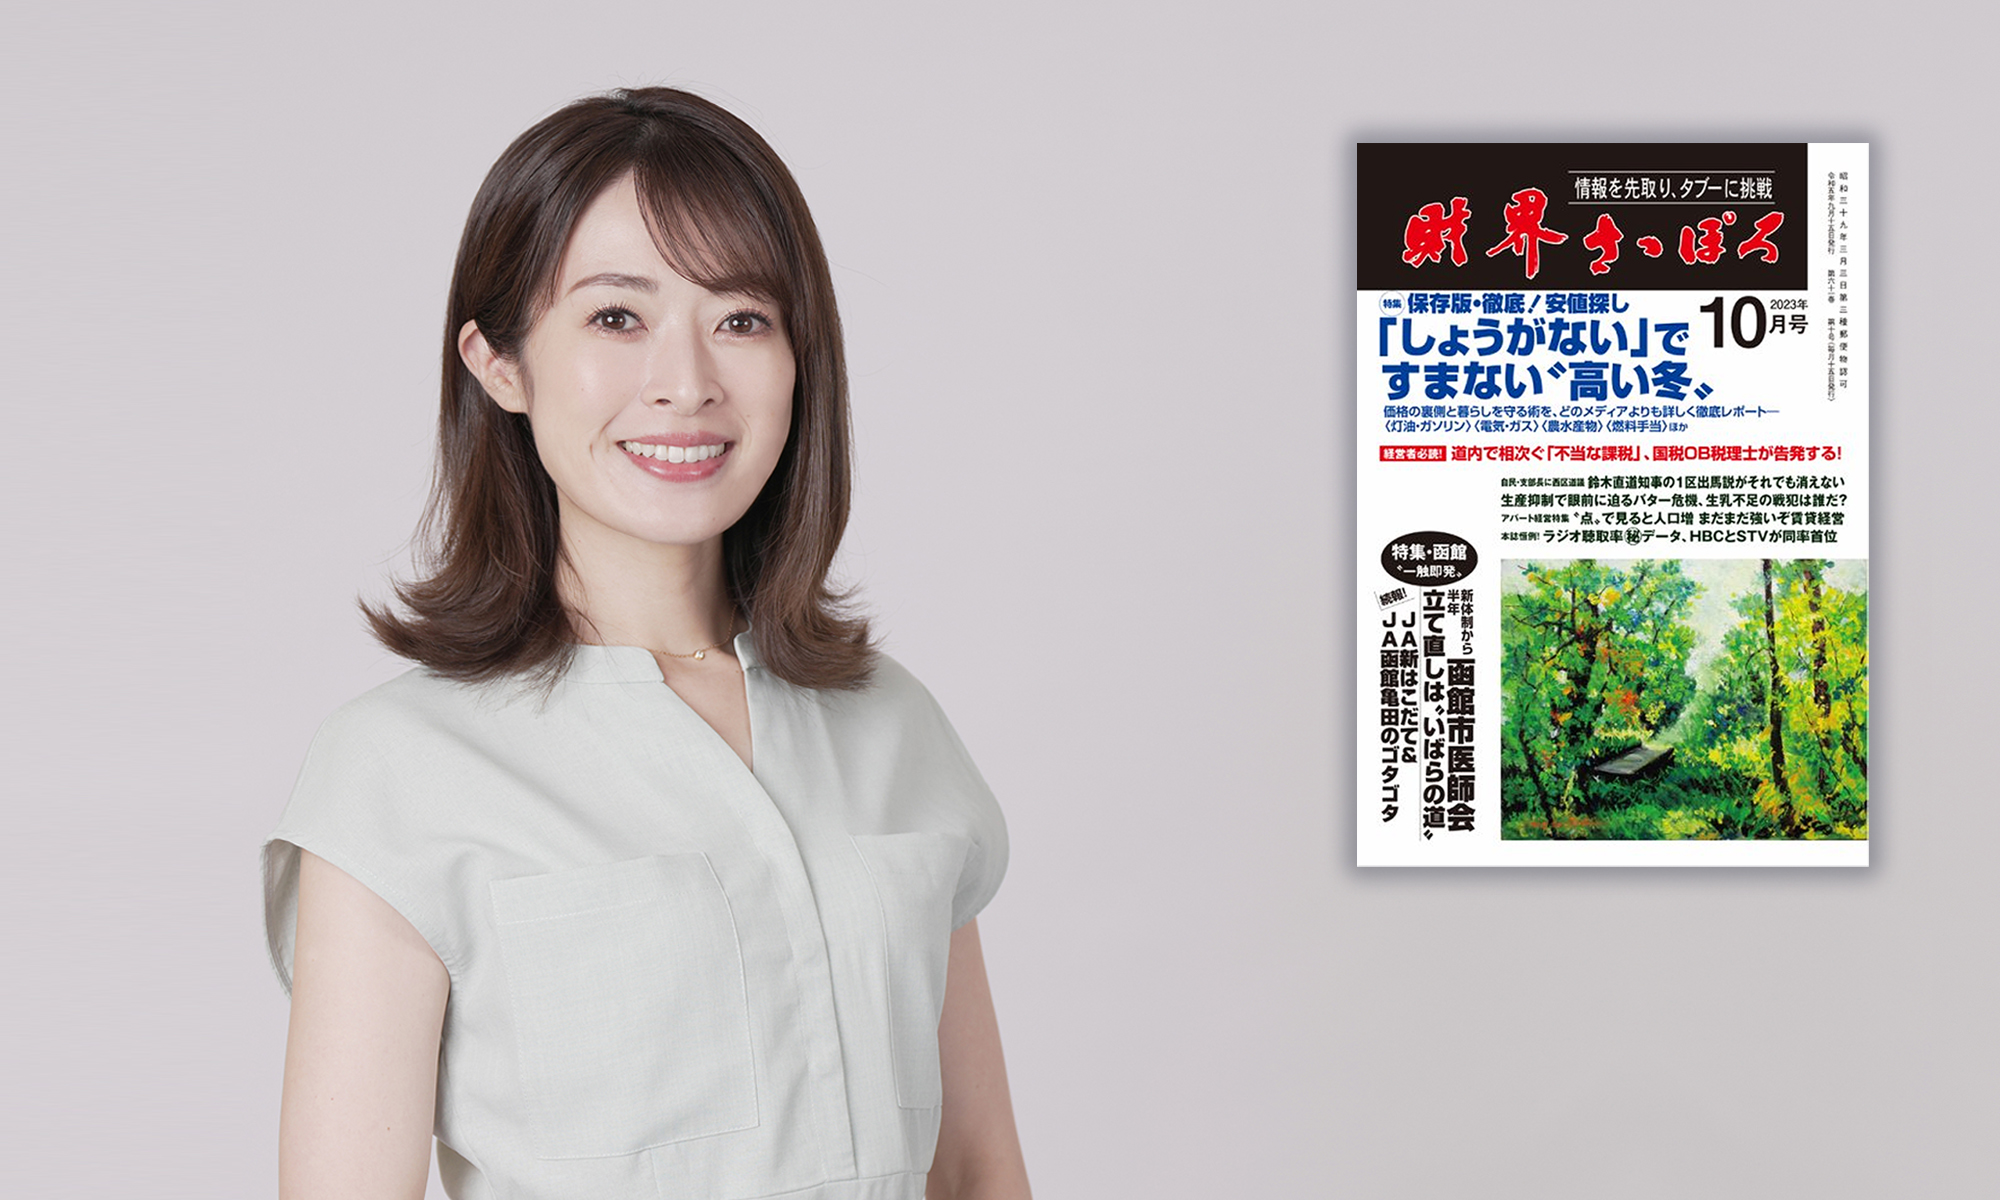 石沢綾子がアナウンサーの仕事を再開した記事が「財界さっぽろ」に掲載されました。